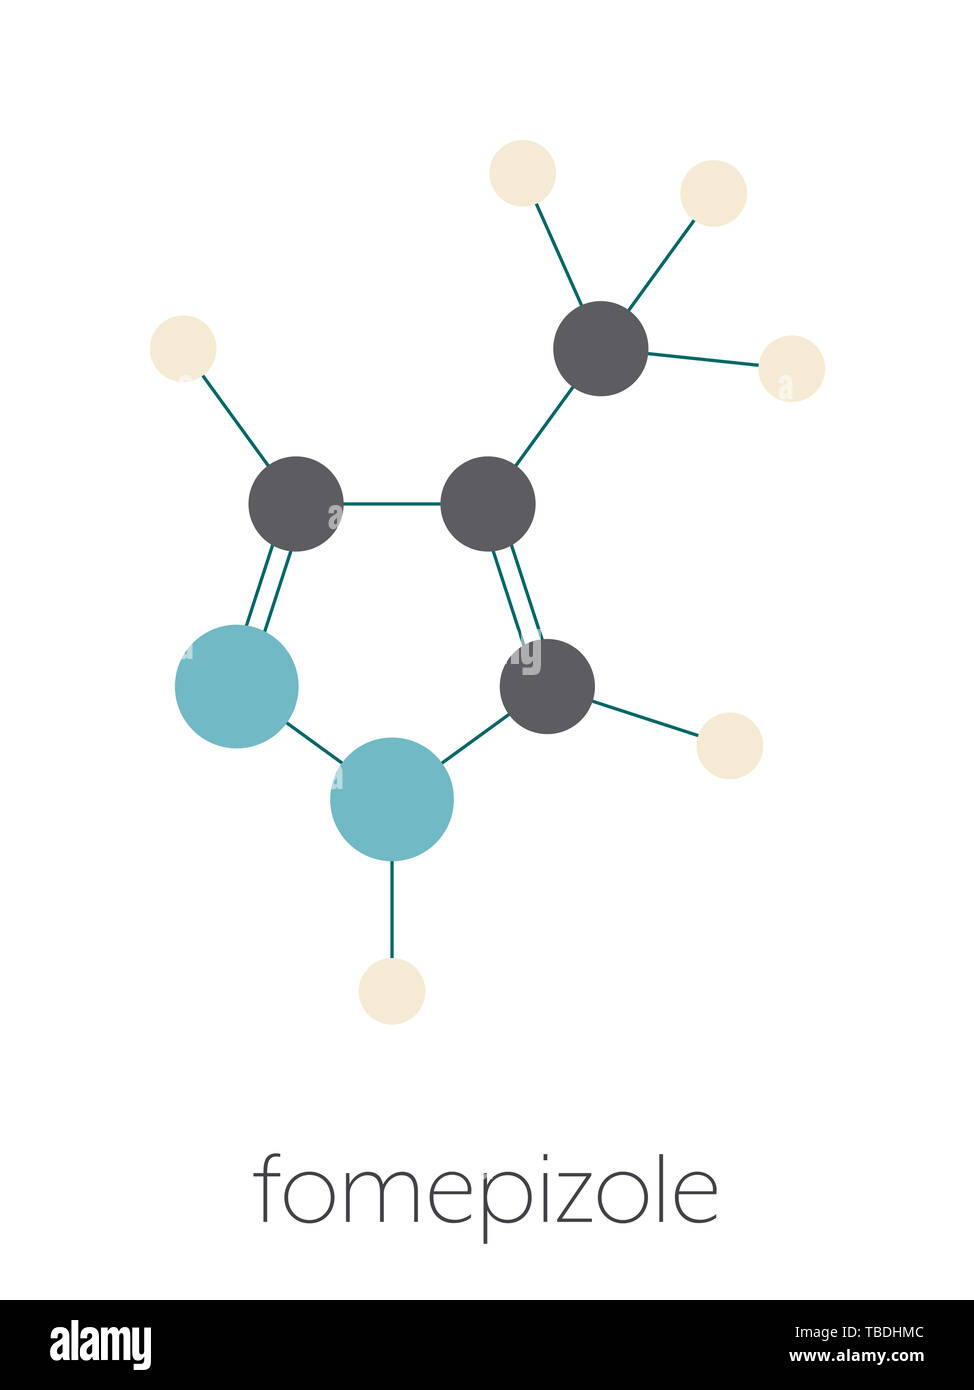 Intoxicación con metanol antídoto Fomepizole molécula. Estilizada fórmula esquelética (estructura química). Los átomos se muestran como círculos de color-coded conectado por una fina capa de los bonos, sobre un fondo blanco: hidrógeno (beige), carbón (gris), nitrógeno (azul). Foto de stock